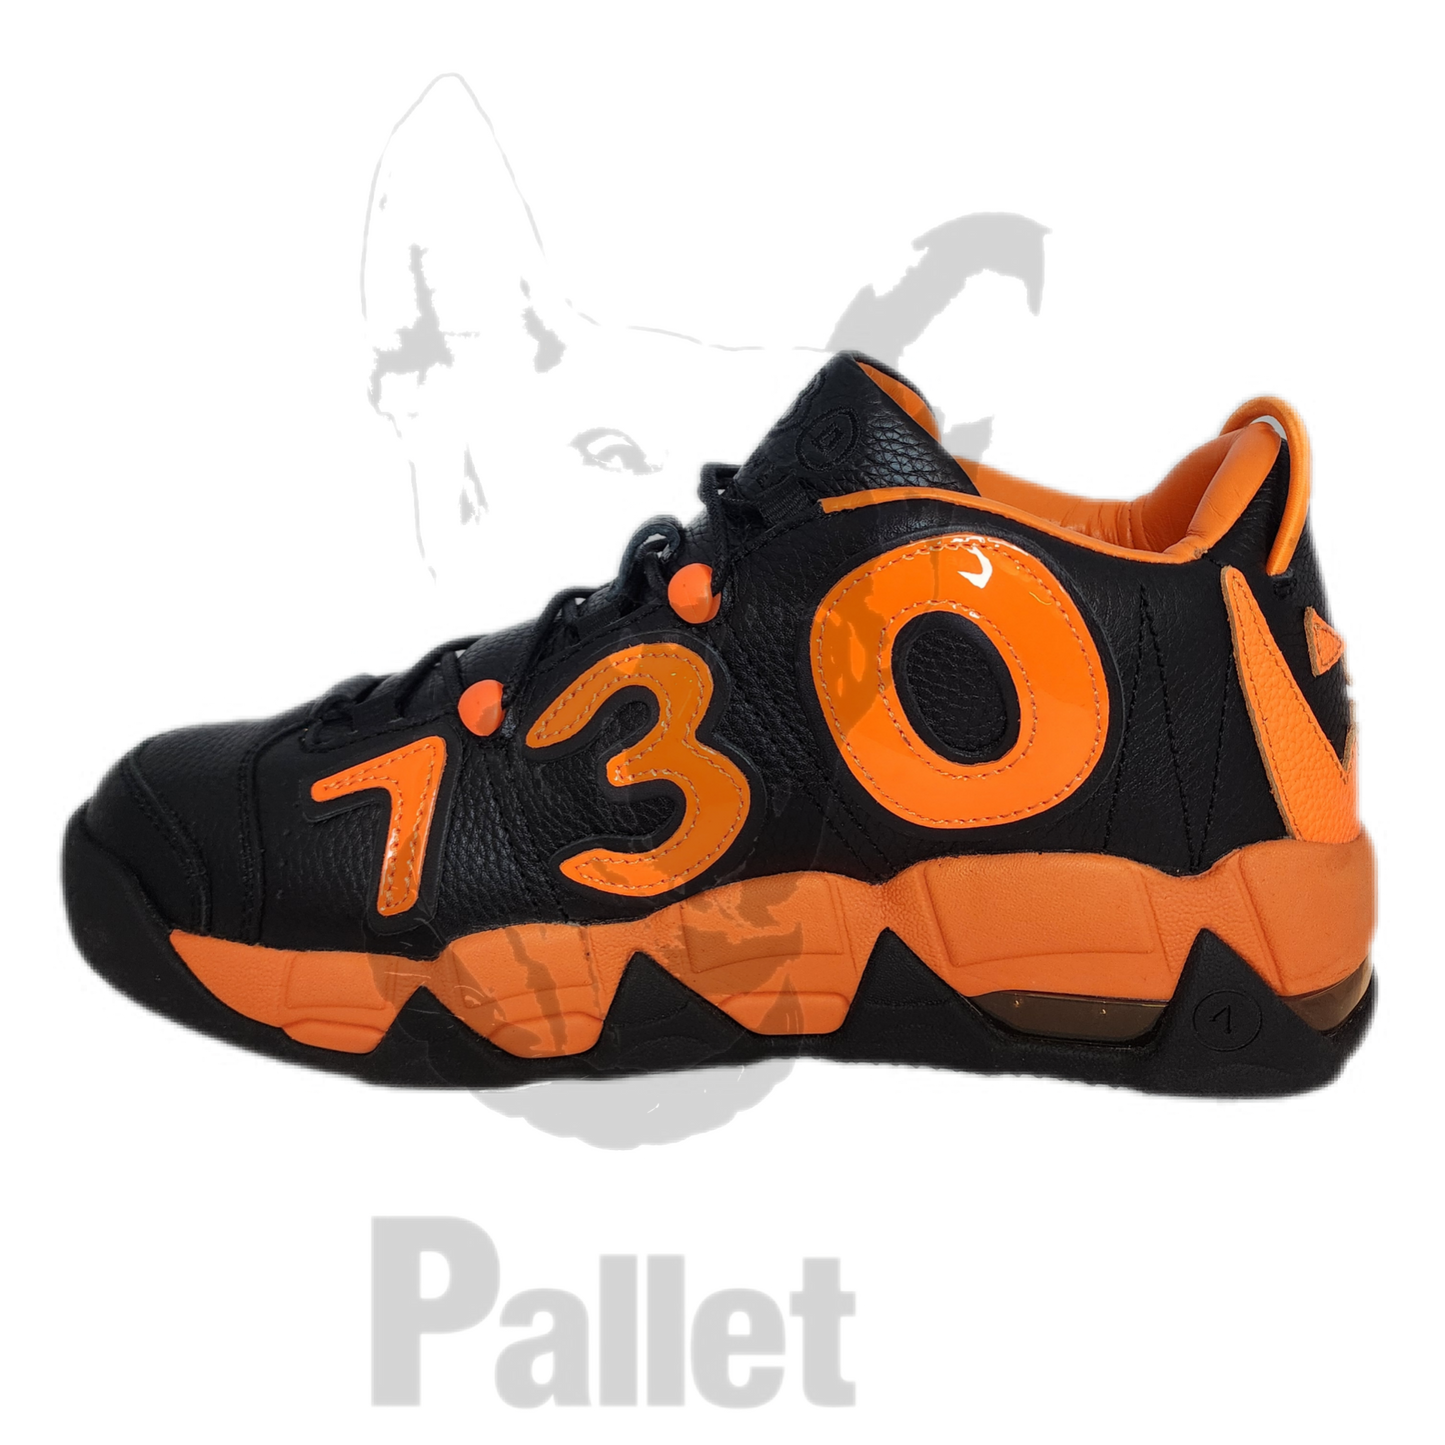 Ass Pizza - "730 Footwear Baller Orange" - Size 9